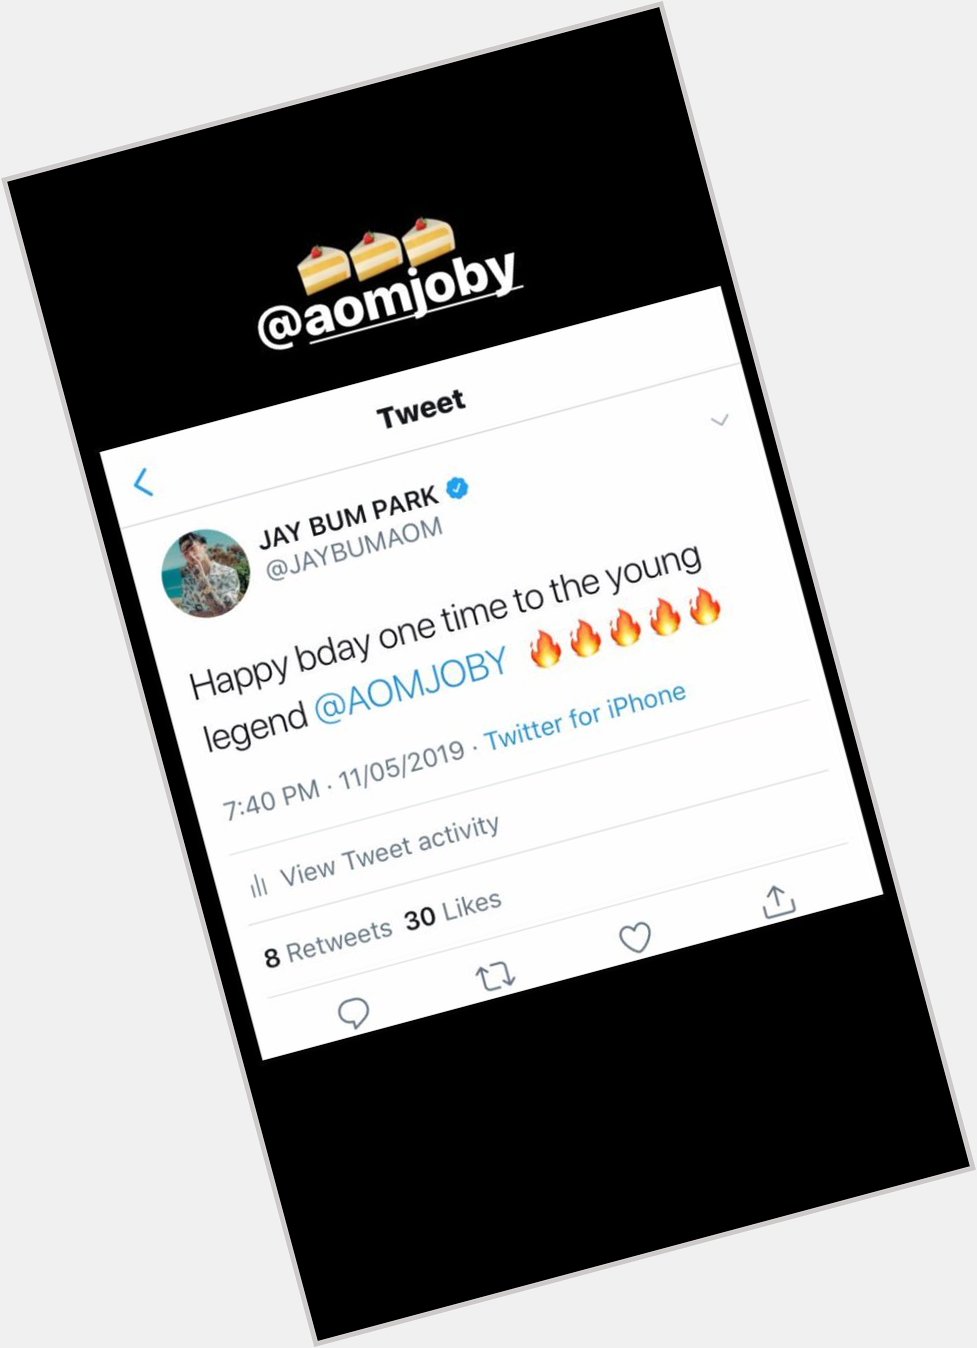 [JP IGSTORY] Jay Park shares his message wishing Aomjoby a Happy Birthday 